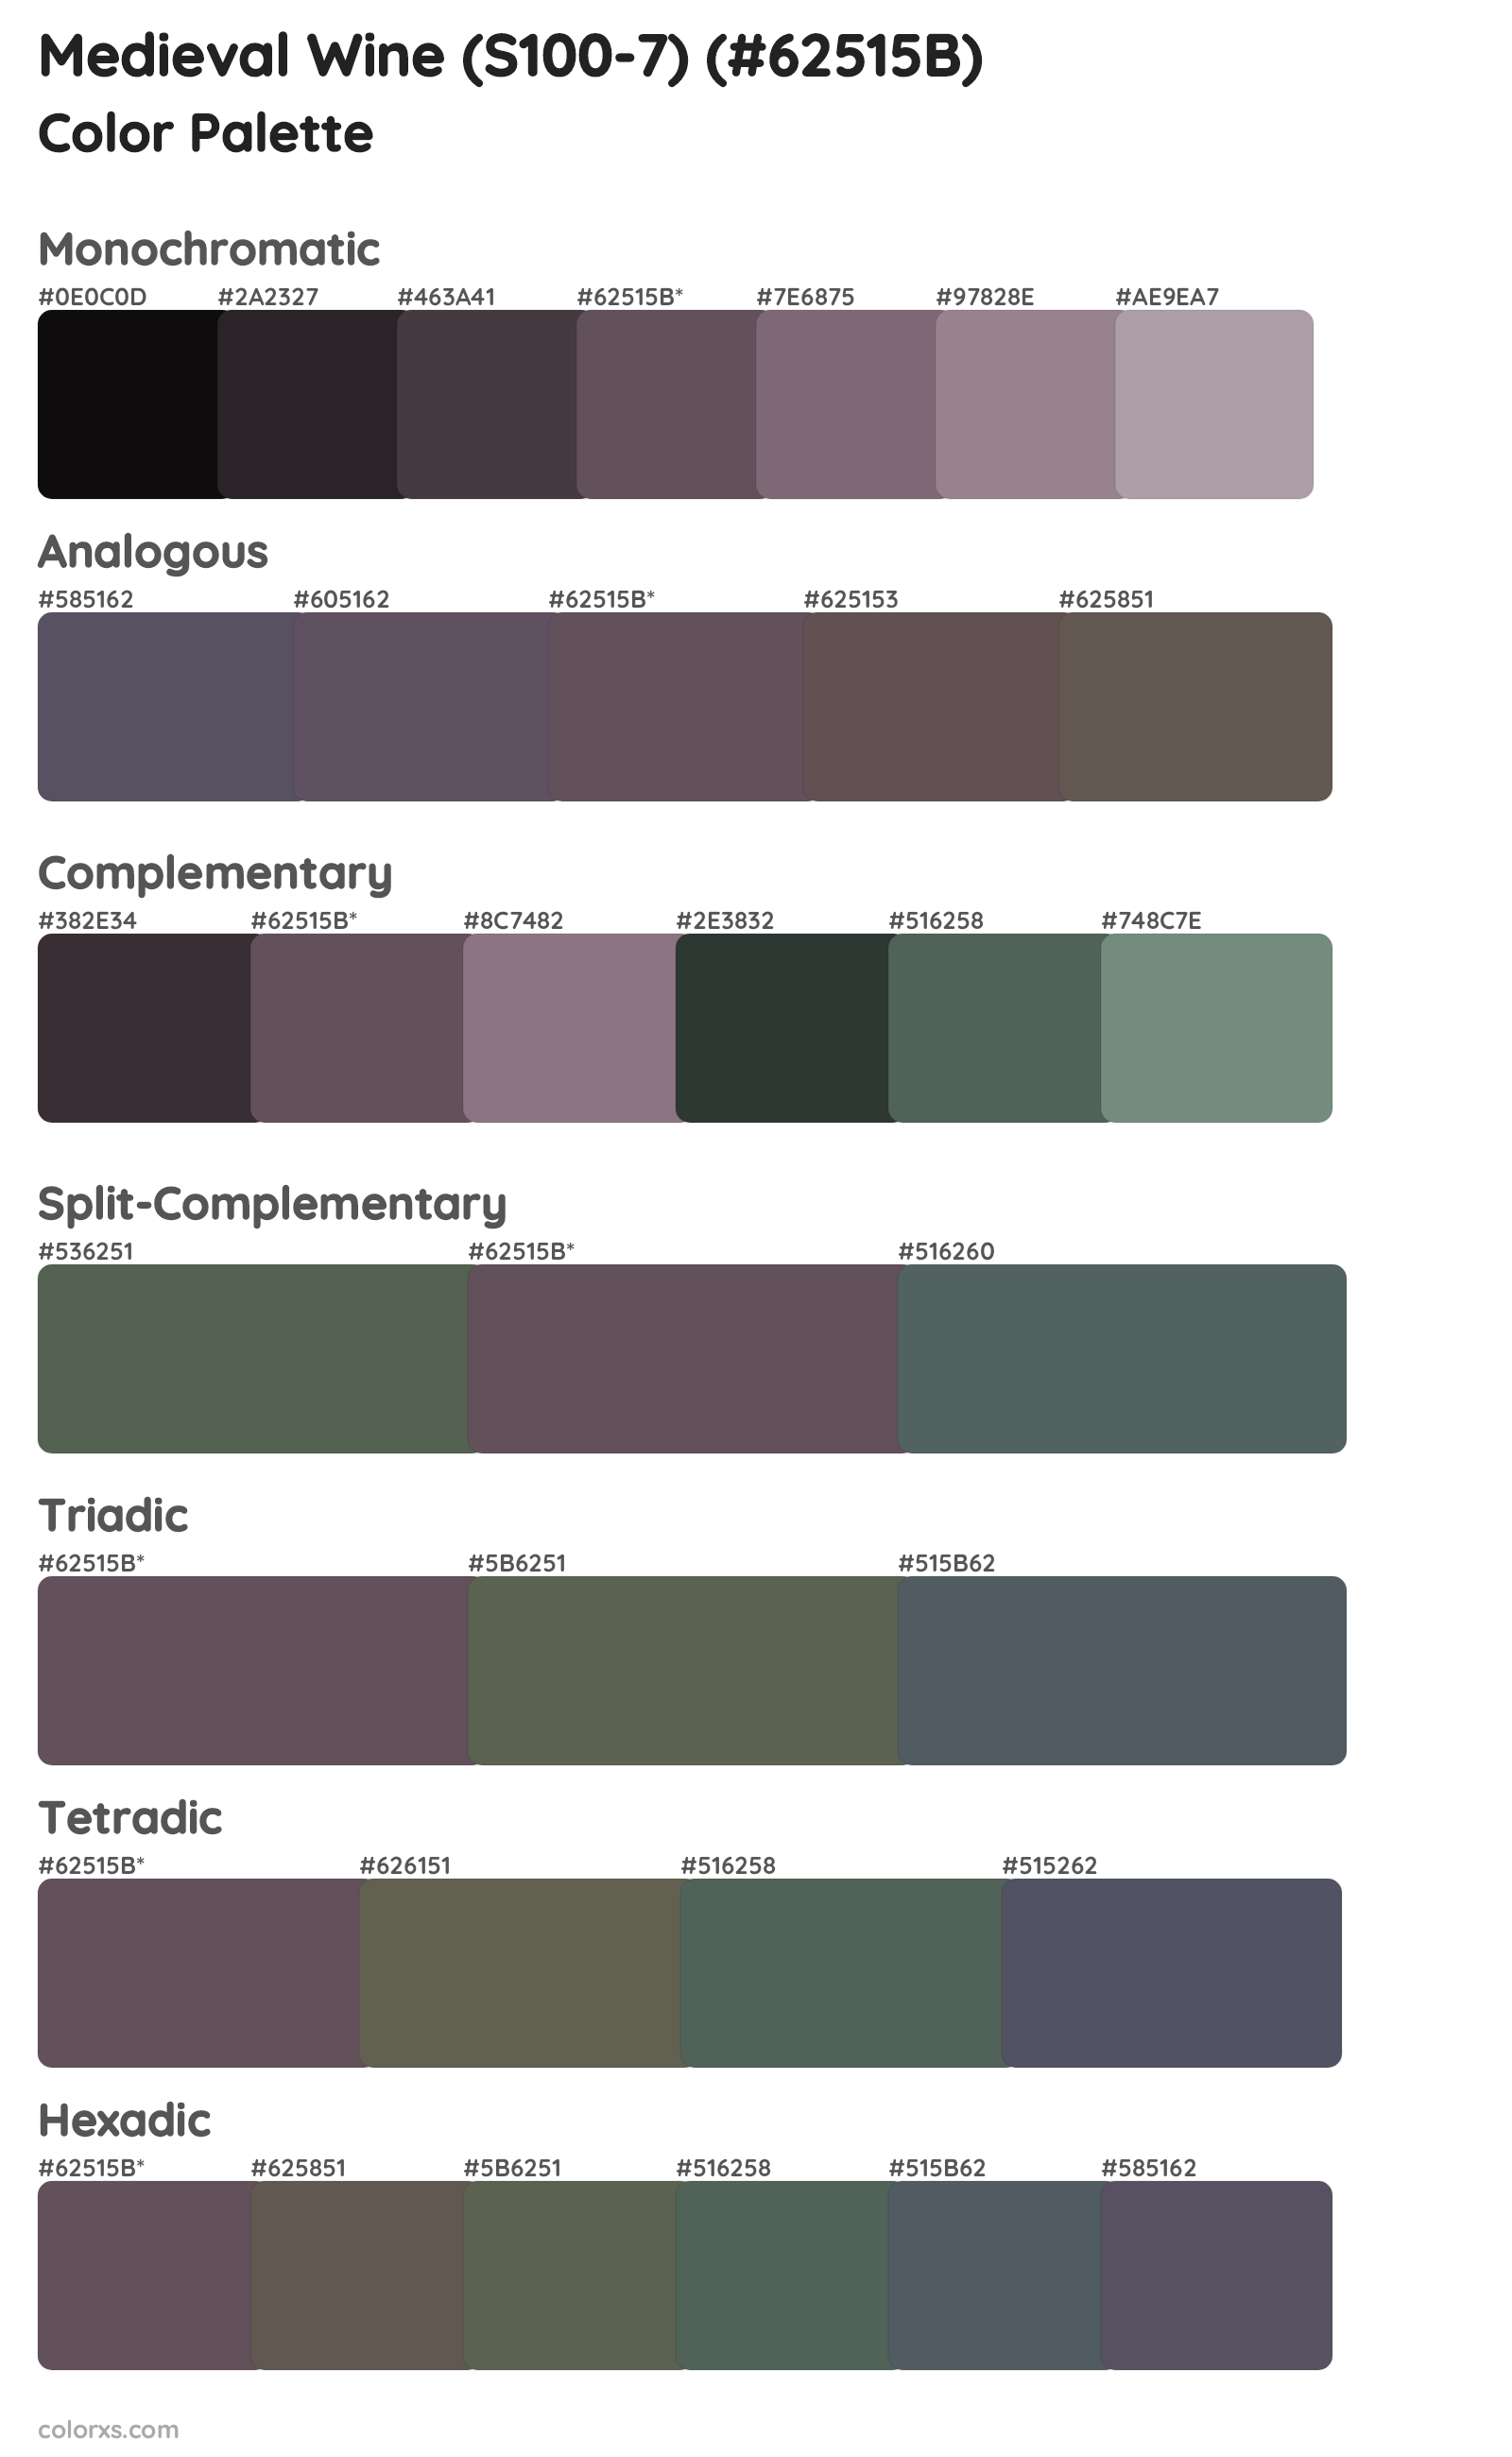 Medieval Wine (S100-7) Color Scheme Palettes